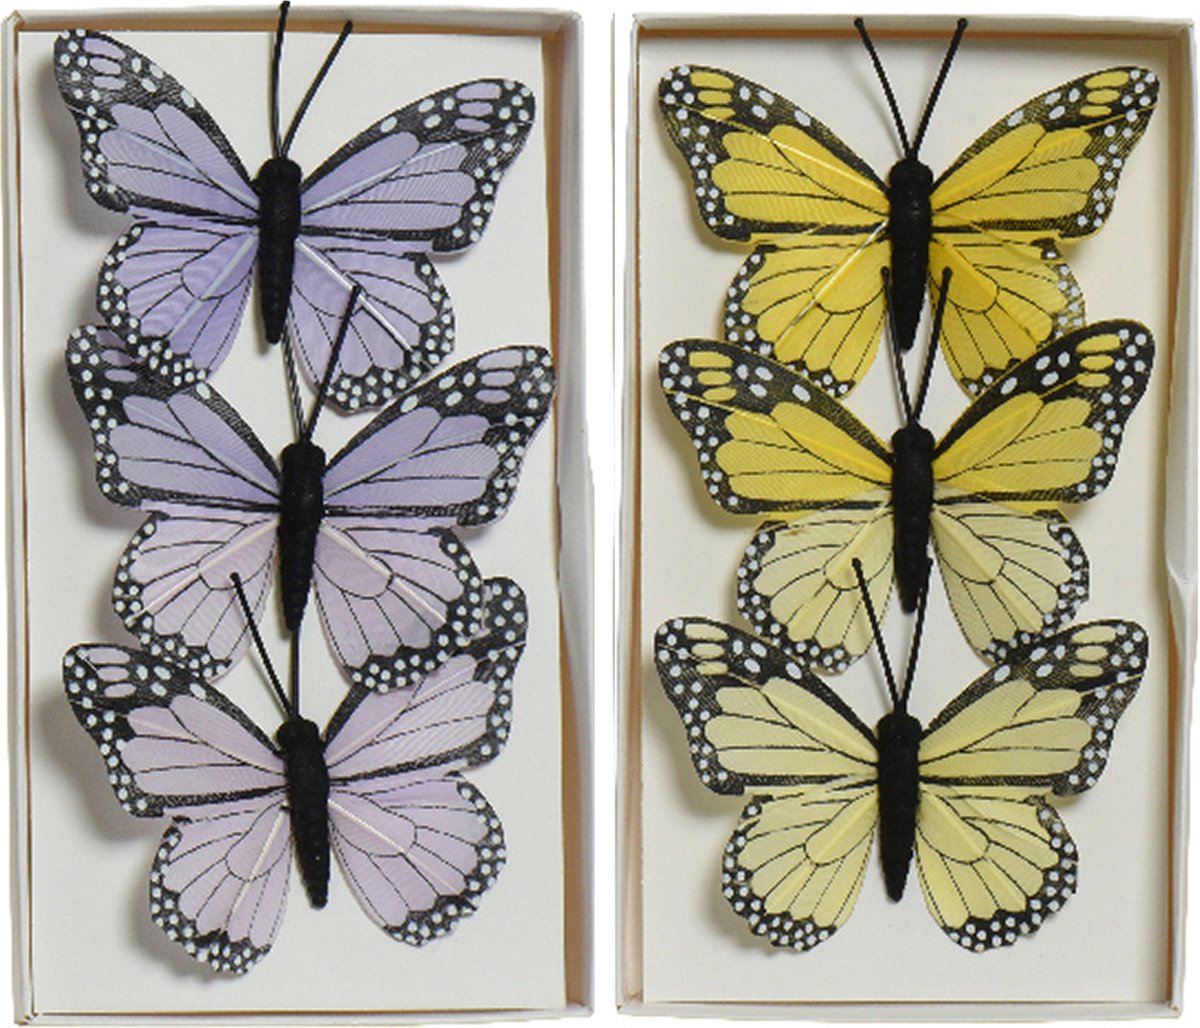 Decoratie vlinders op draad - 6x stuks - geel - paars - 6 cm